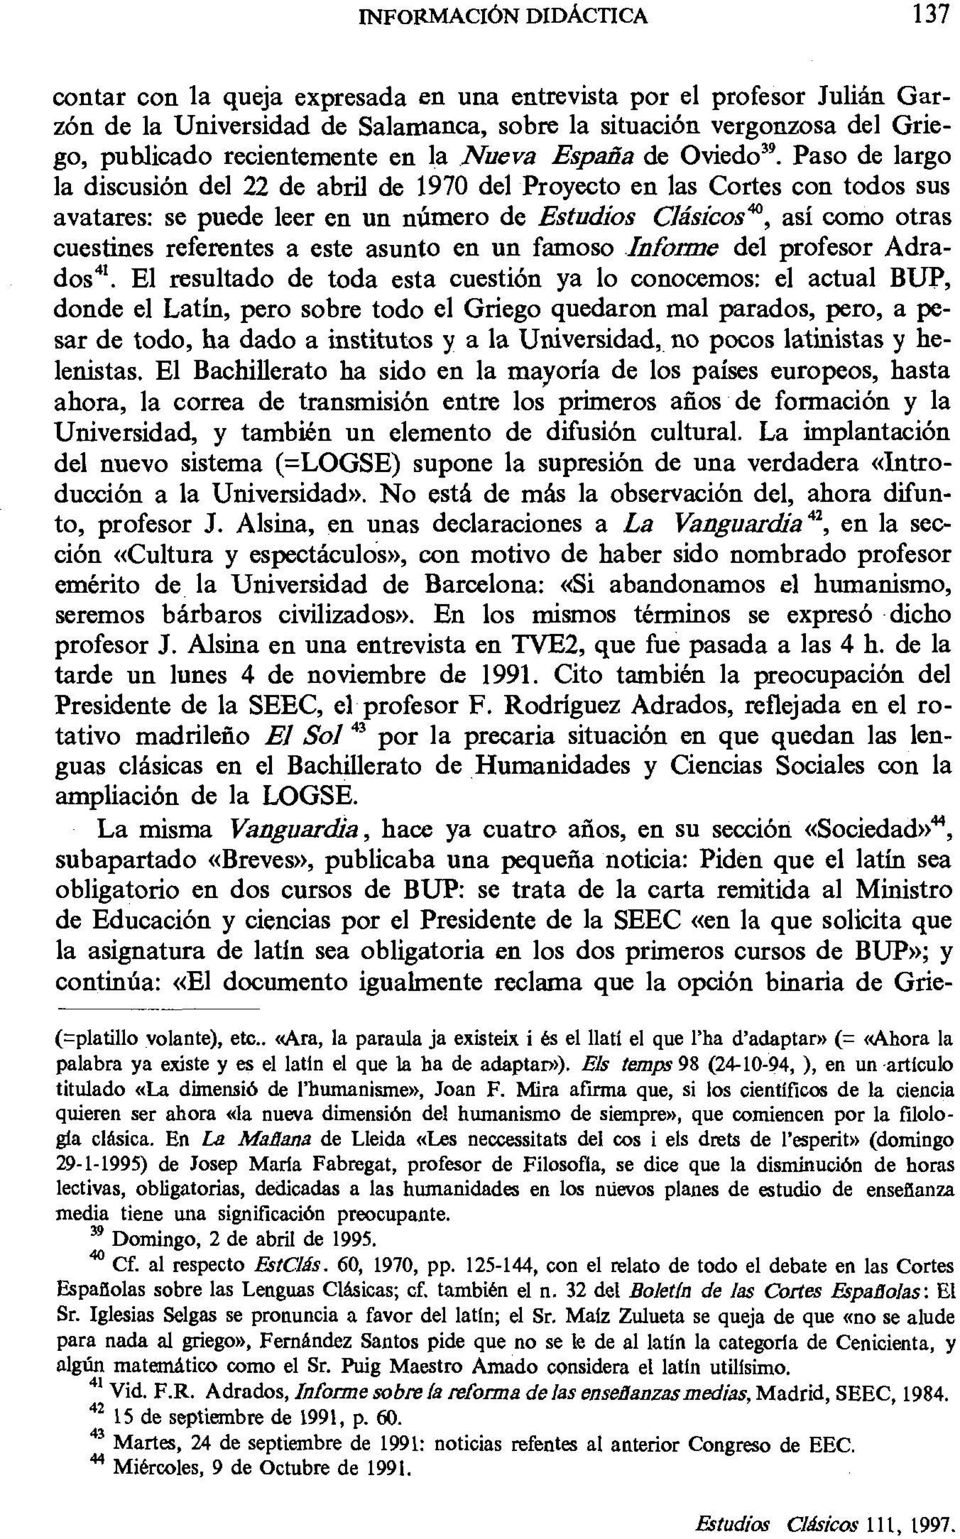 Paso de largo la discusión del 22 de abril de 1970 del Proyecto en las Cortes con todos sus avatares: se puede leer en un número de Estudios Clásicosm, así como otras cuestines referentes a este